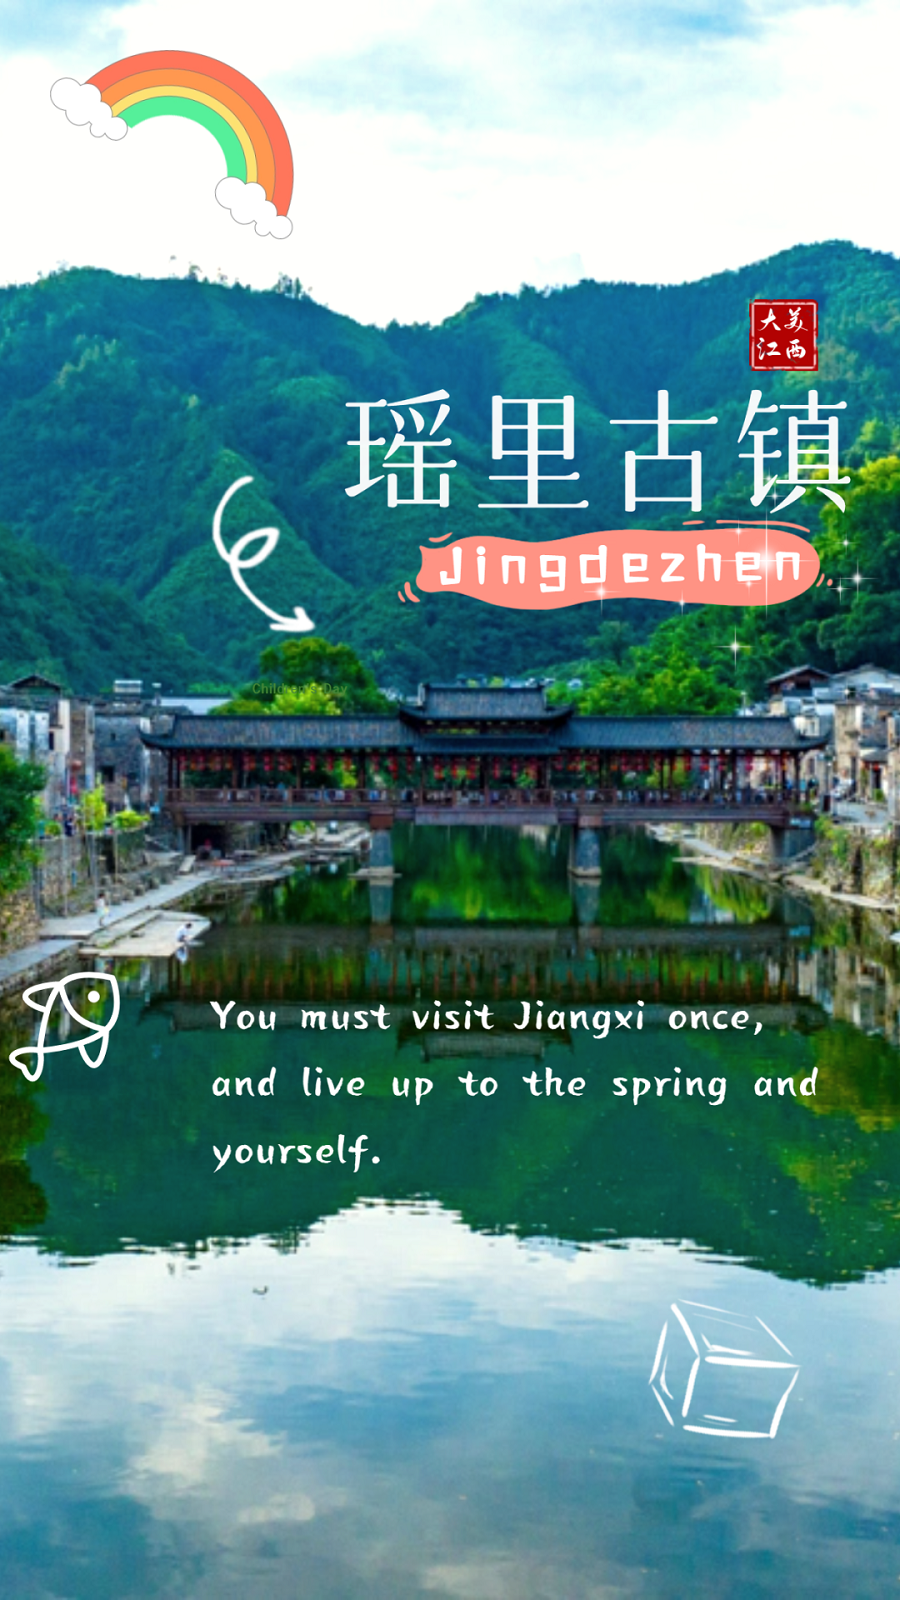 Welcome to Jiangxi